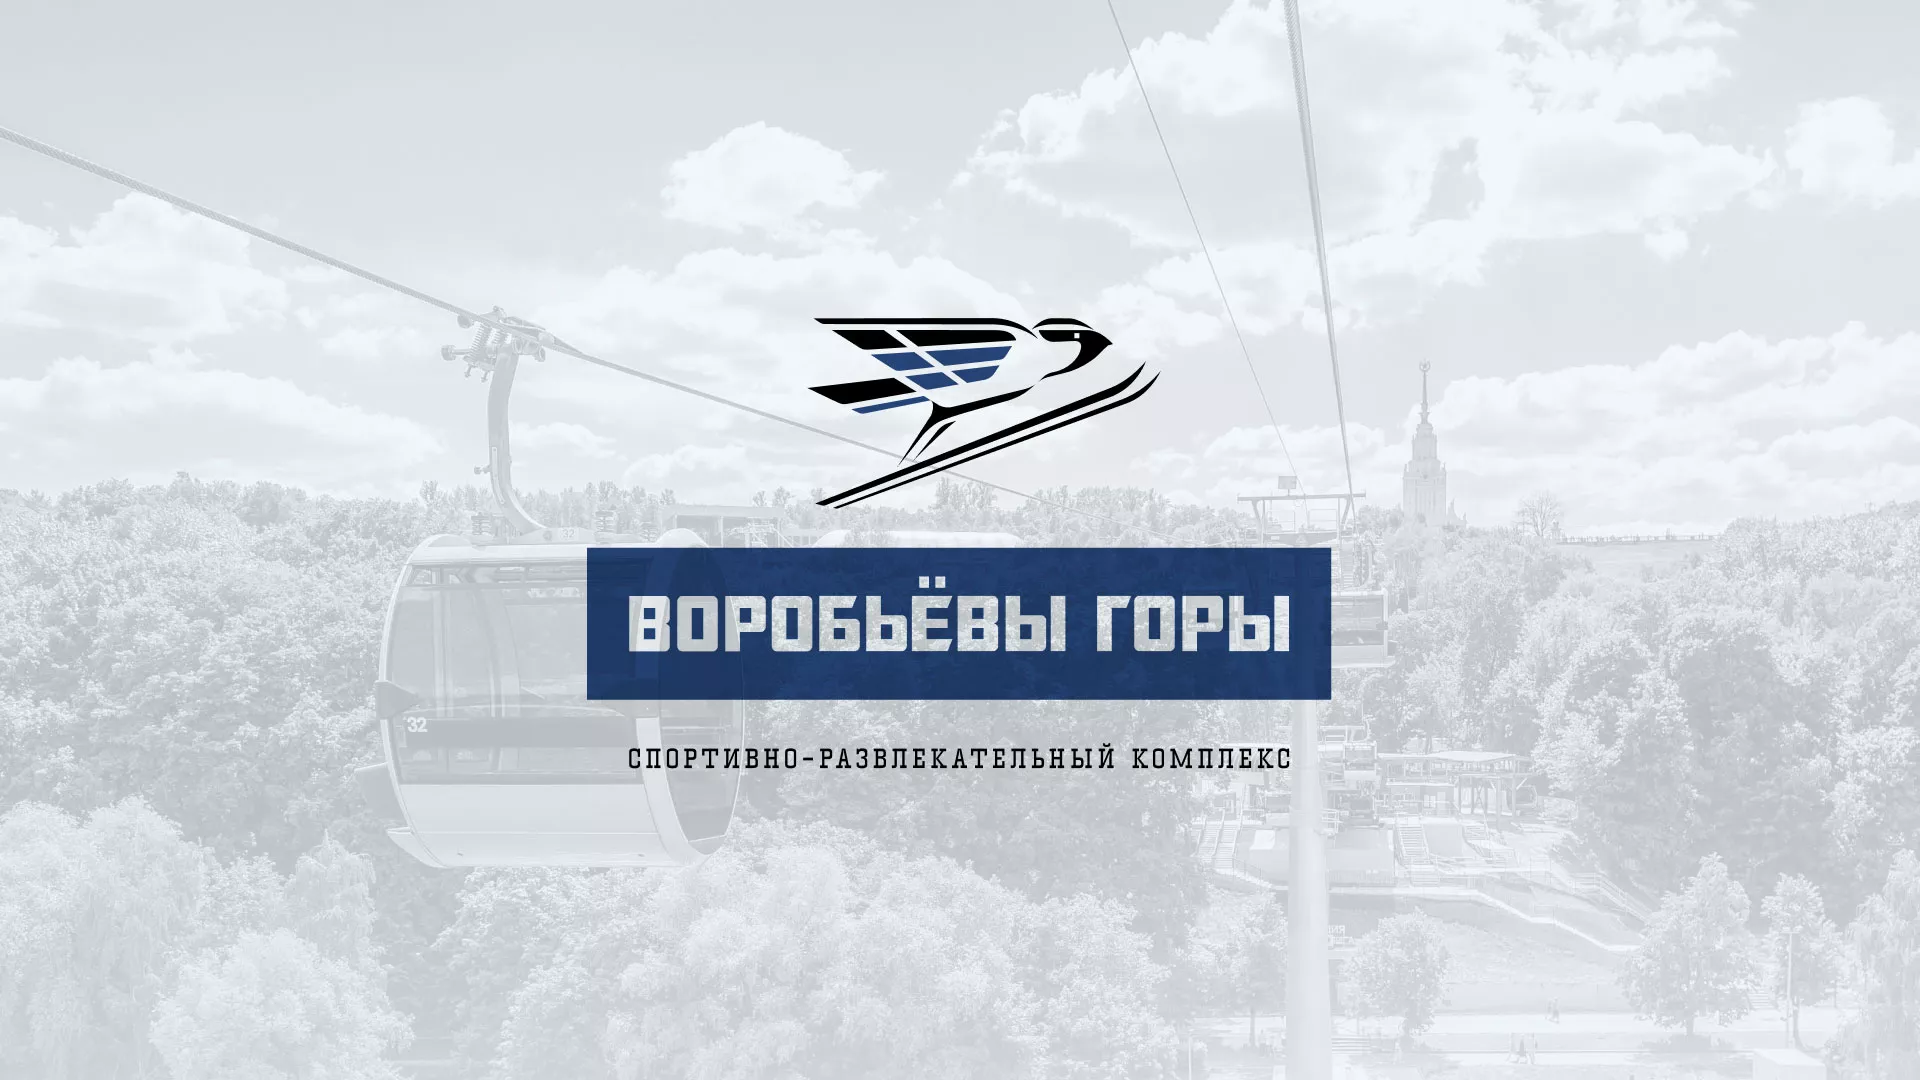 Разработка сайта в Катав-Ивановске для спортивно-развлекательного комплекса «Воробьёвы горы»